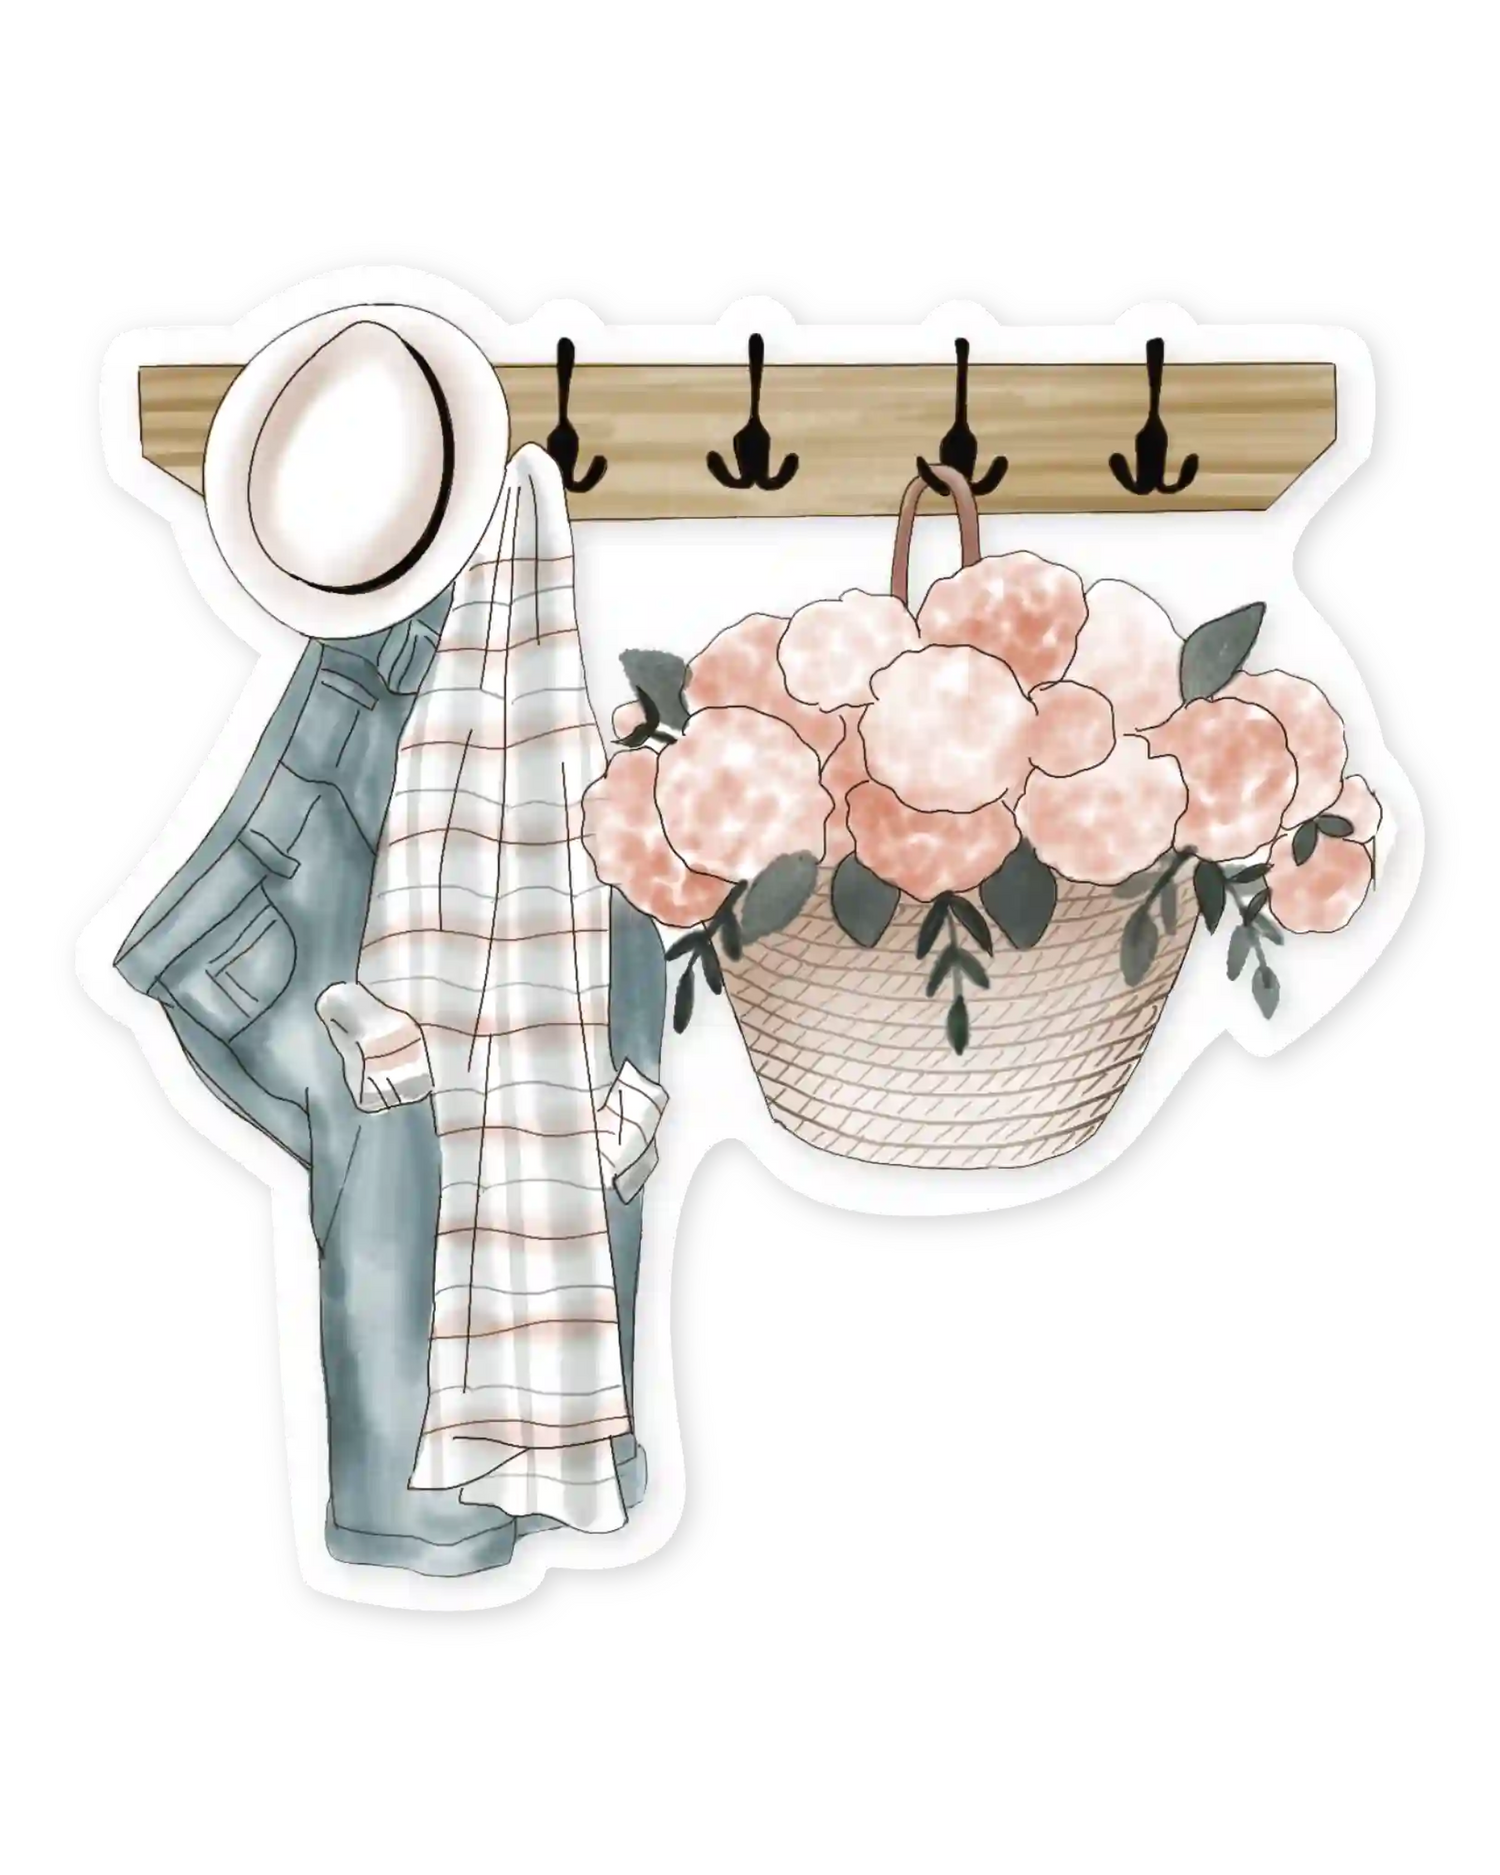 Naljepnice za planer Flowers Always ilustracije detalj vješalica za garderobu i košarica s cvijećem